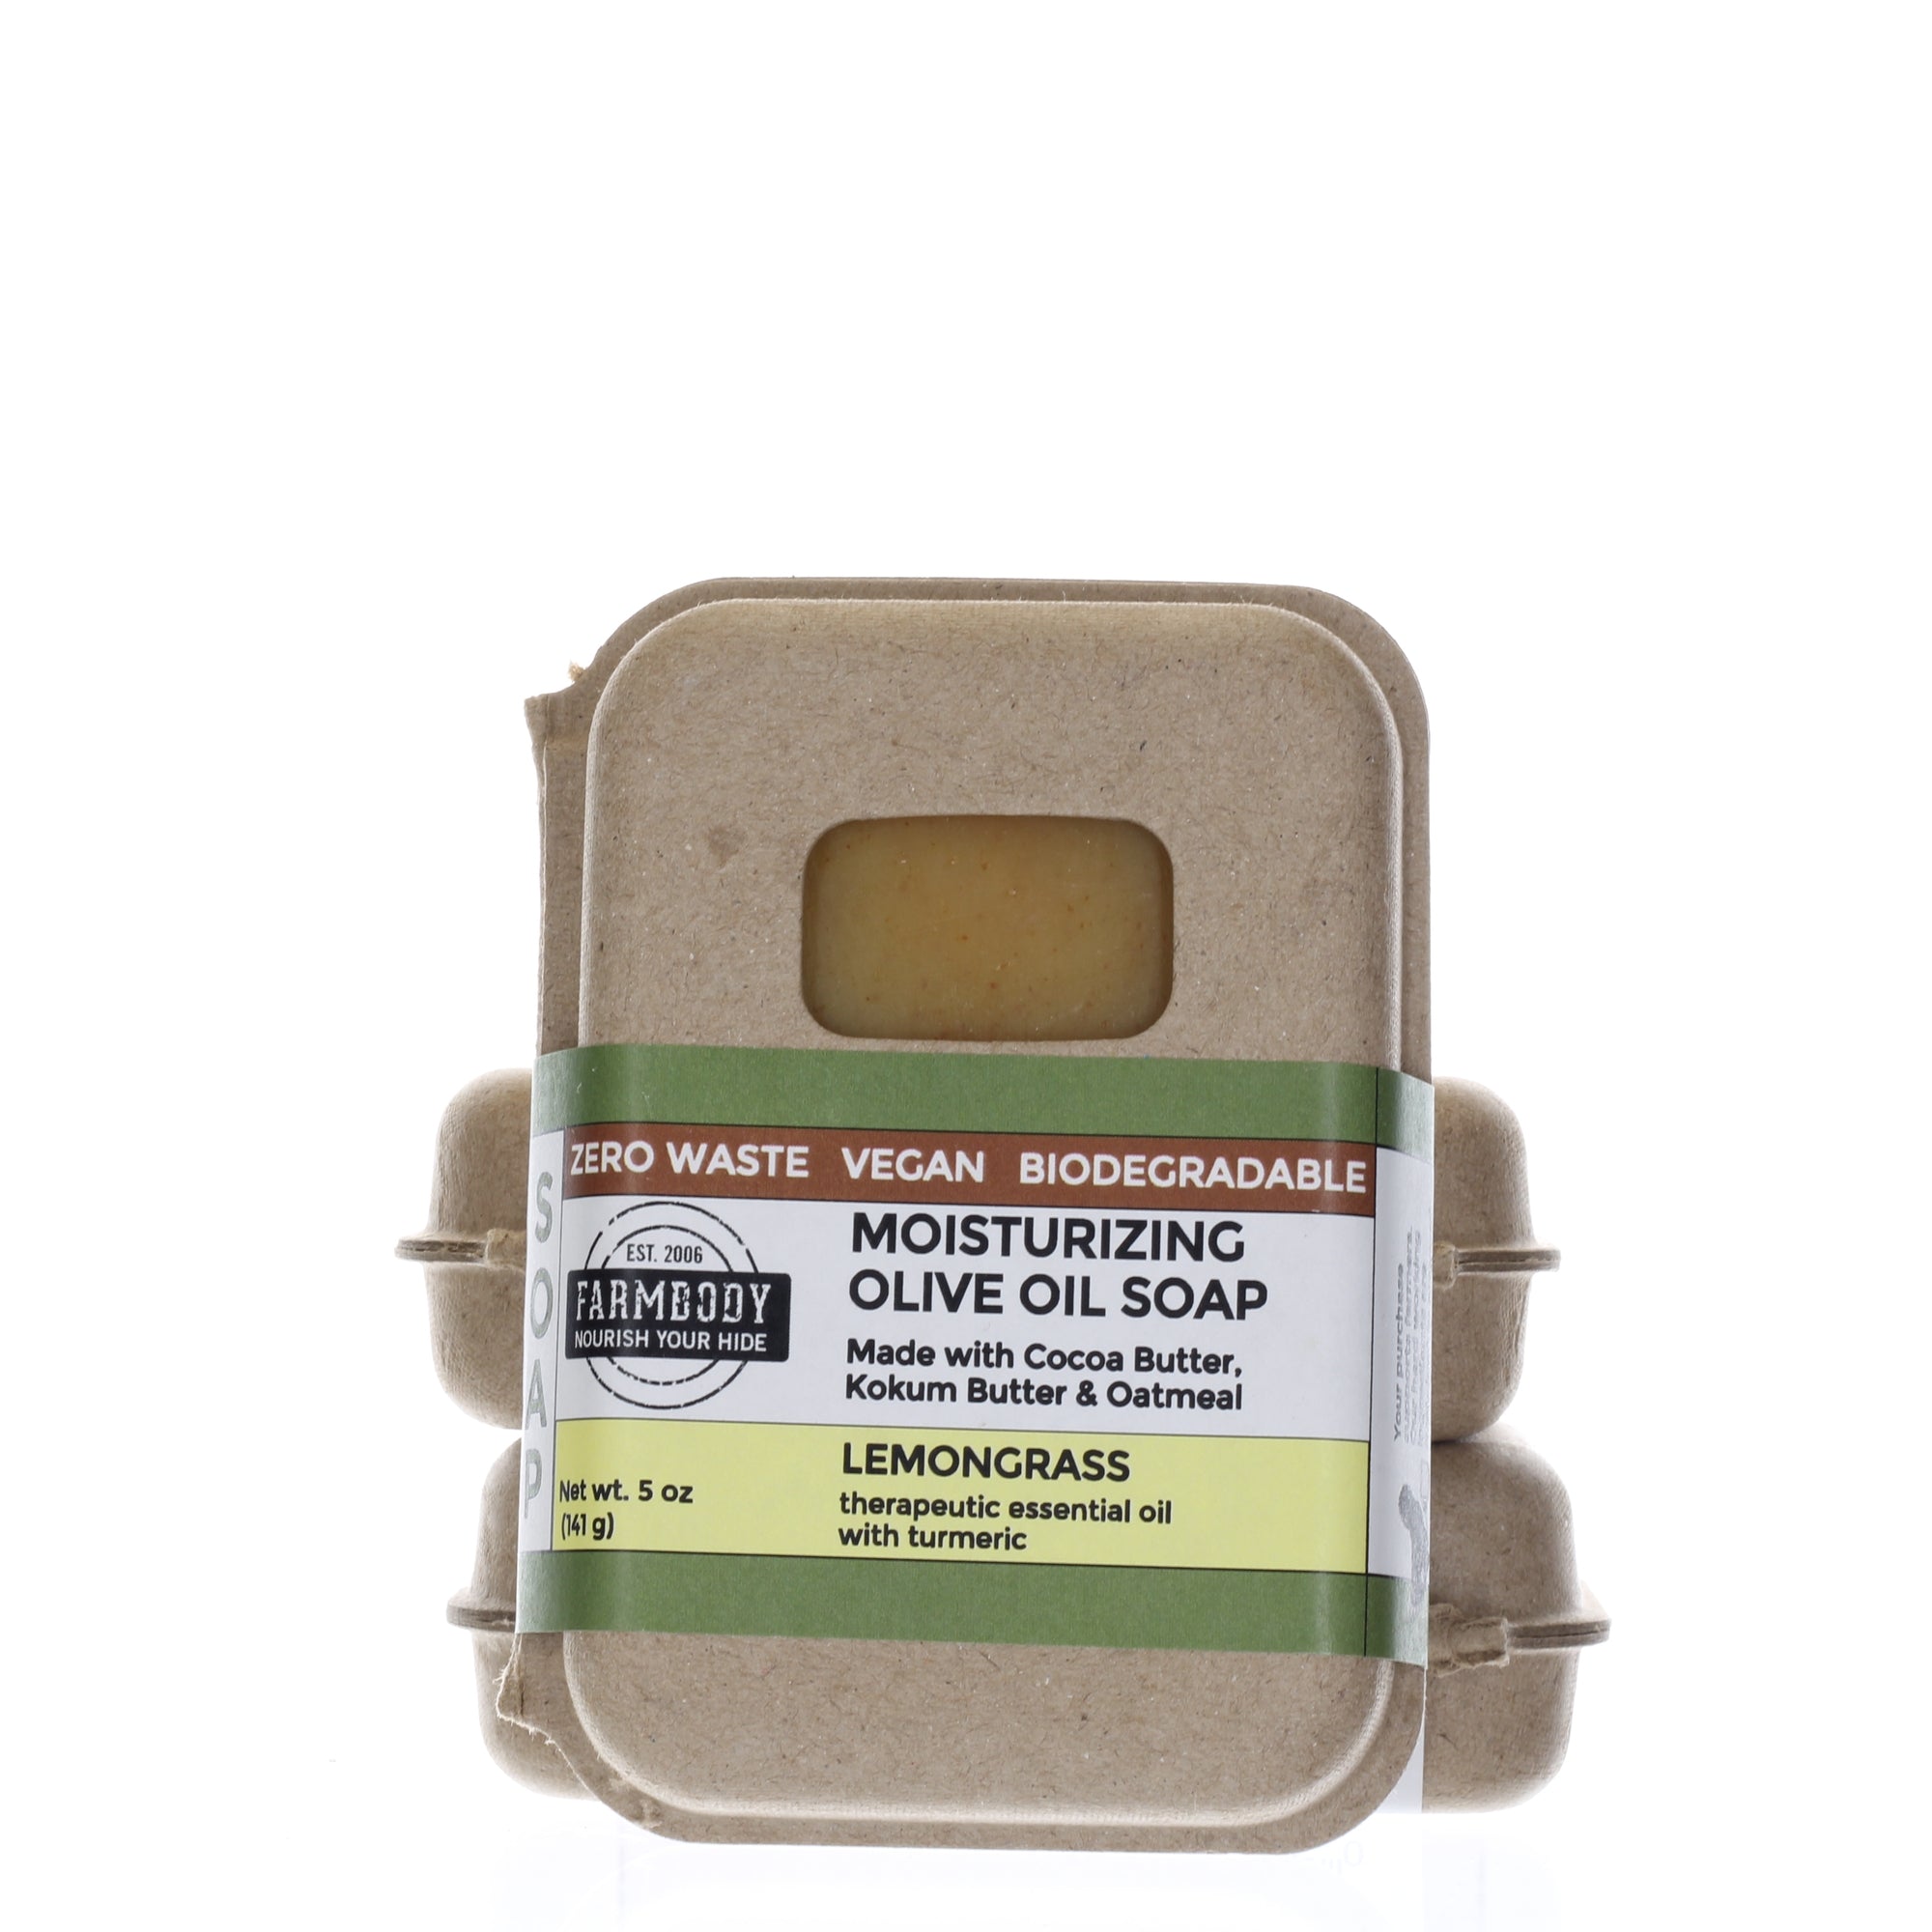 Moisturizing Vegan Olive Oil Soap Benefits for Dry Skin | Lemongrass